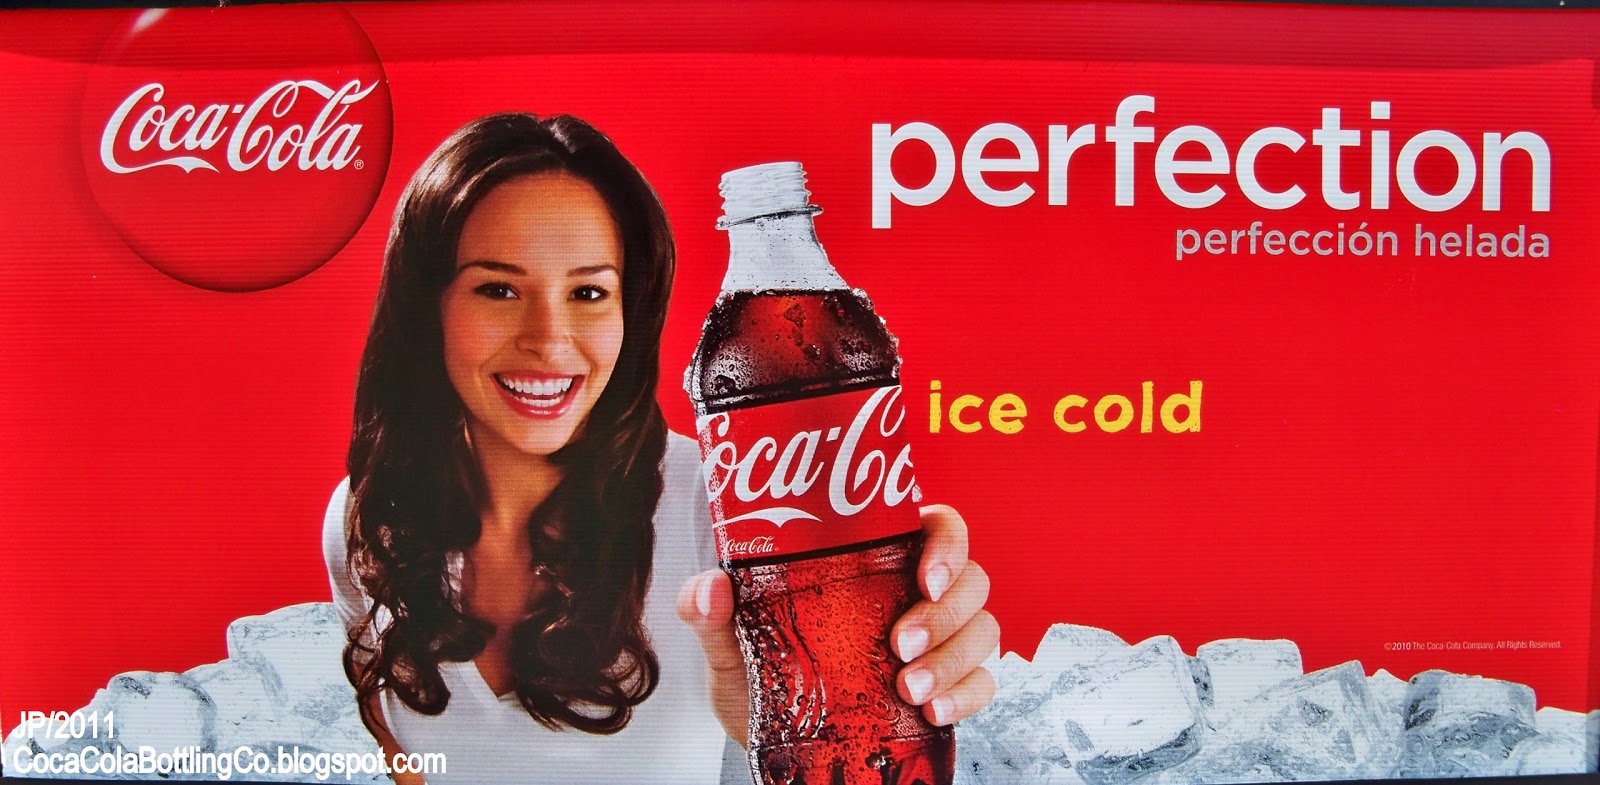 Песня кола басс. Кока кола реклама. Соса сола реклама. Кока кола реклама баннер. Реклама Кока колы 2010.